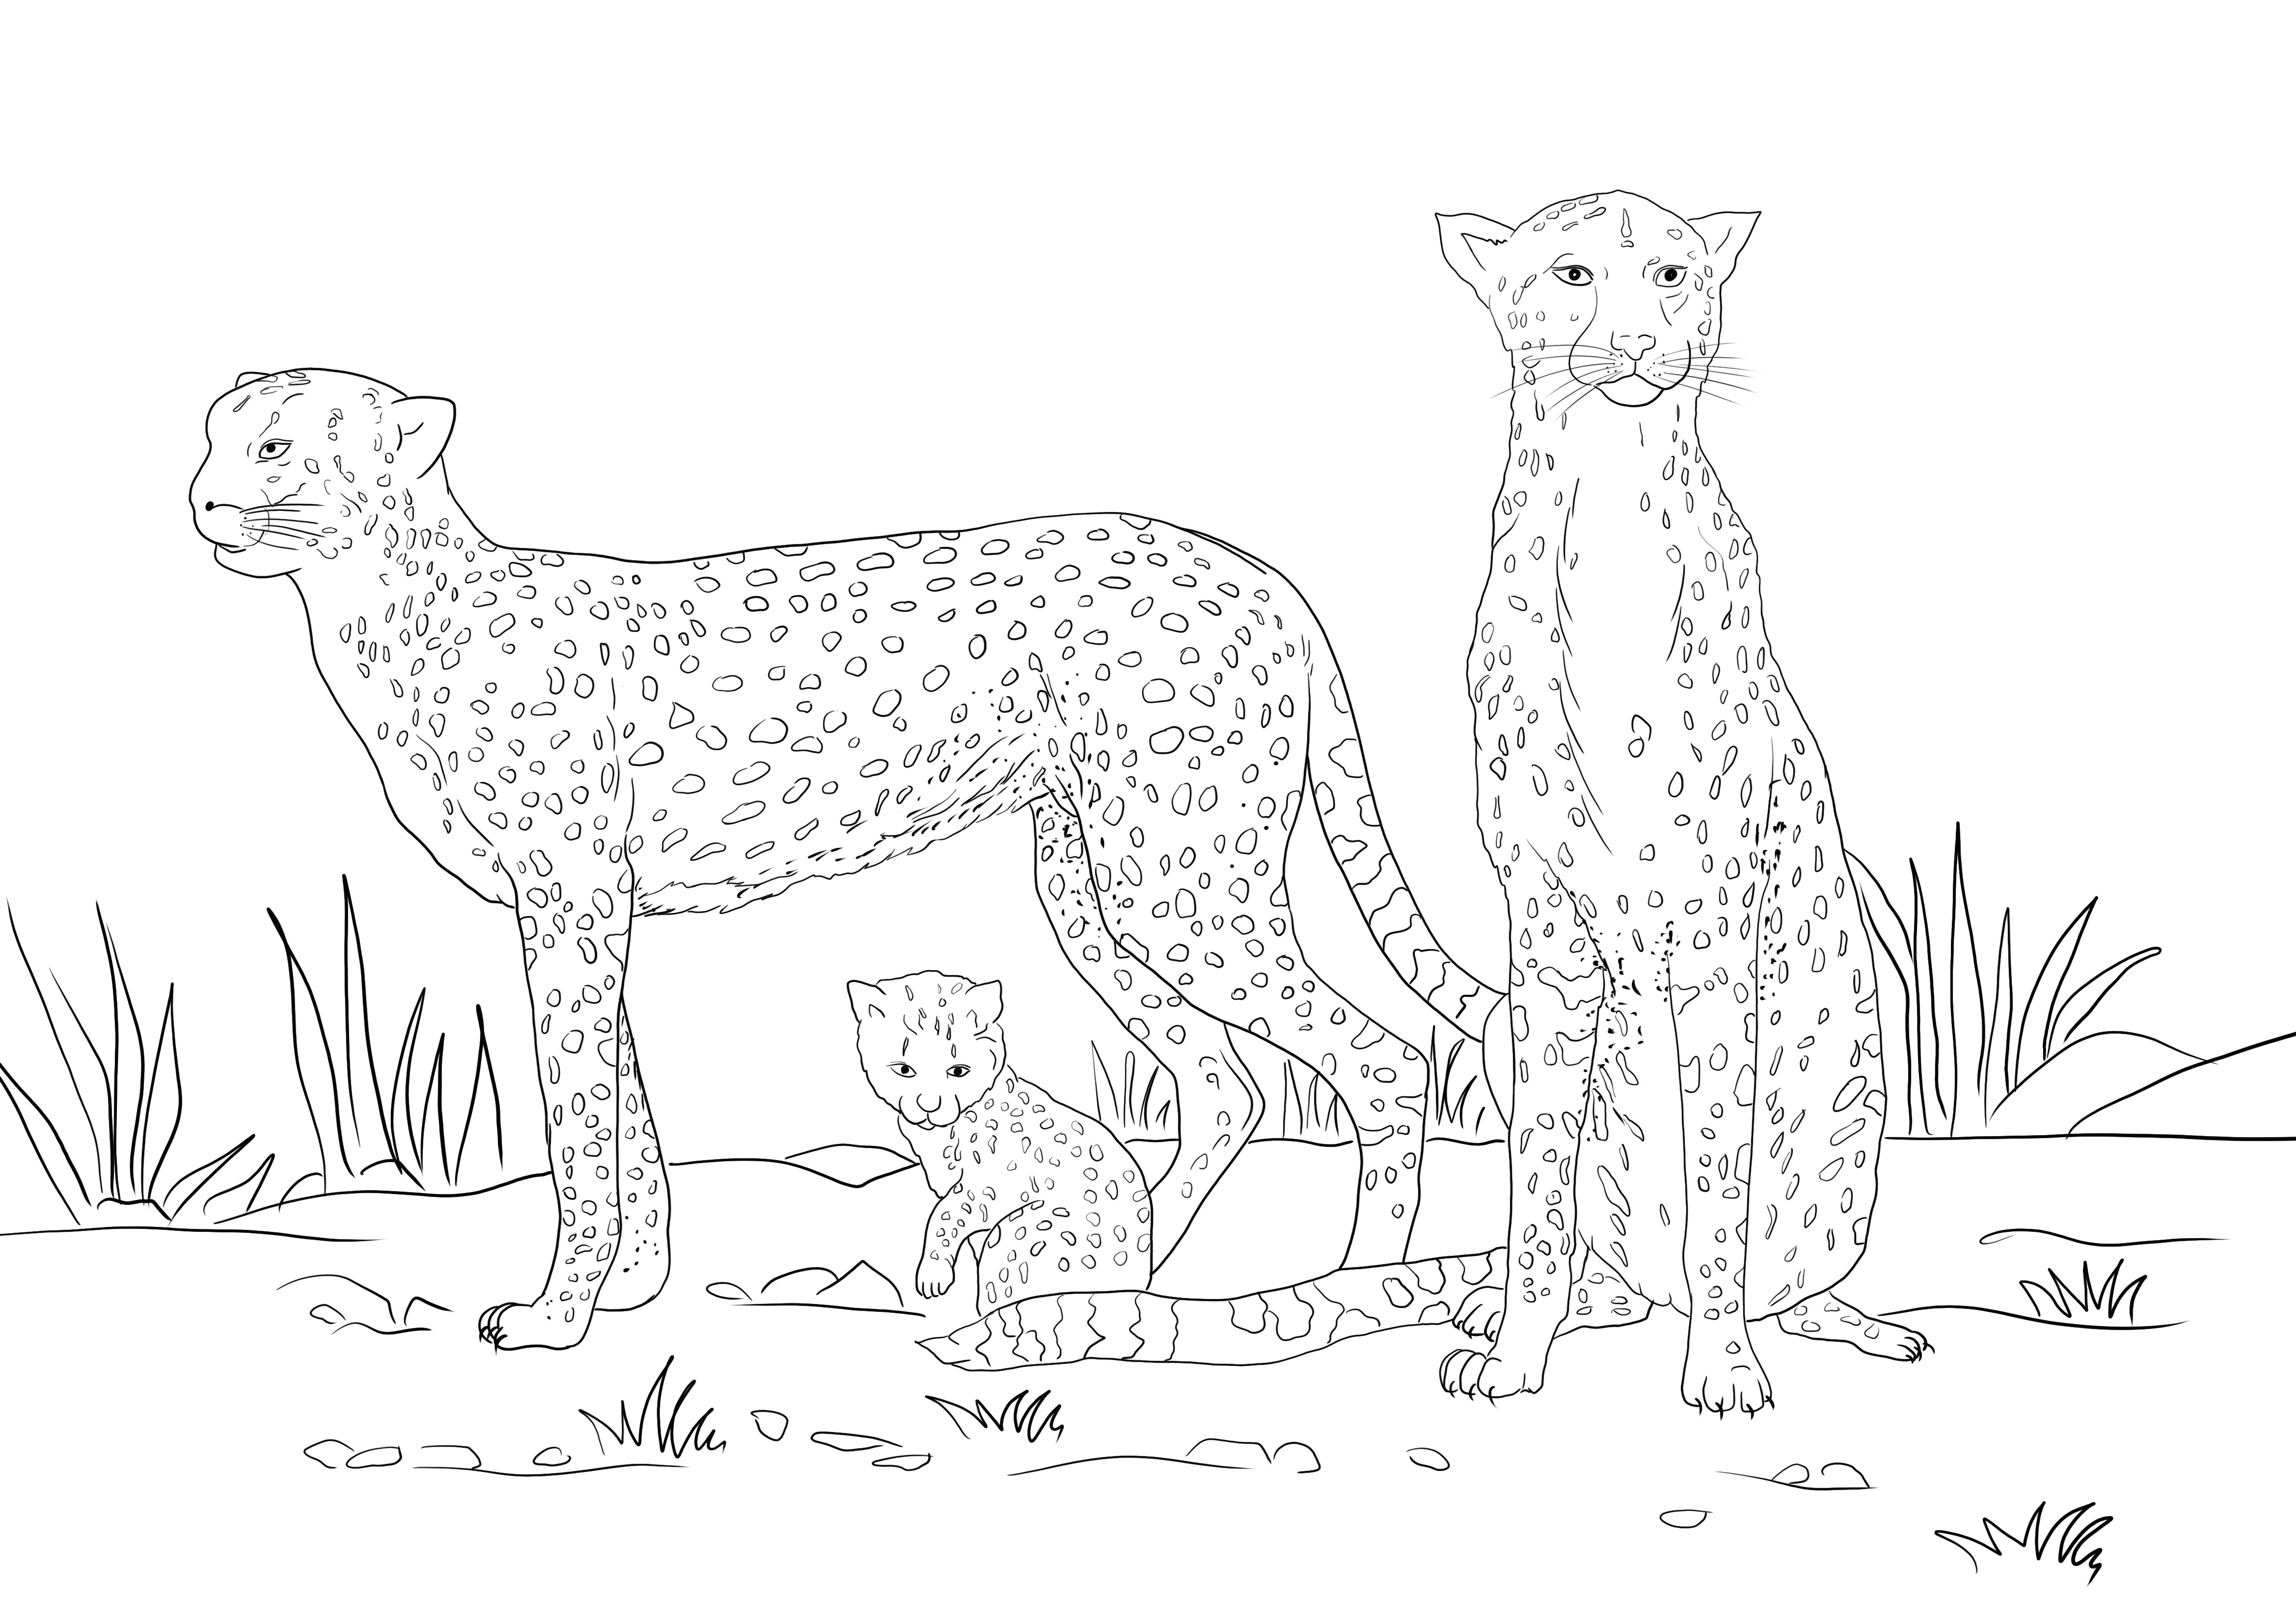 İşte bir Çita ailesinin yazdırması ücretsiz boyama resimlerini içeren ücretsiz bir kaynak